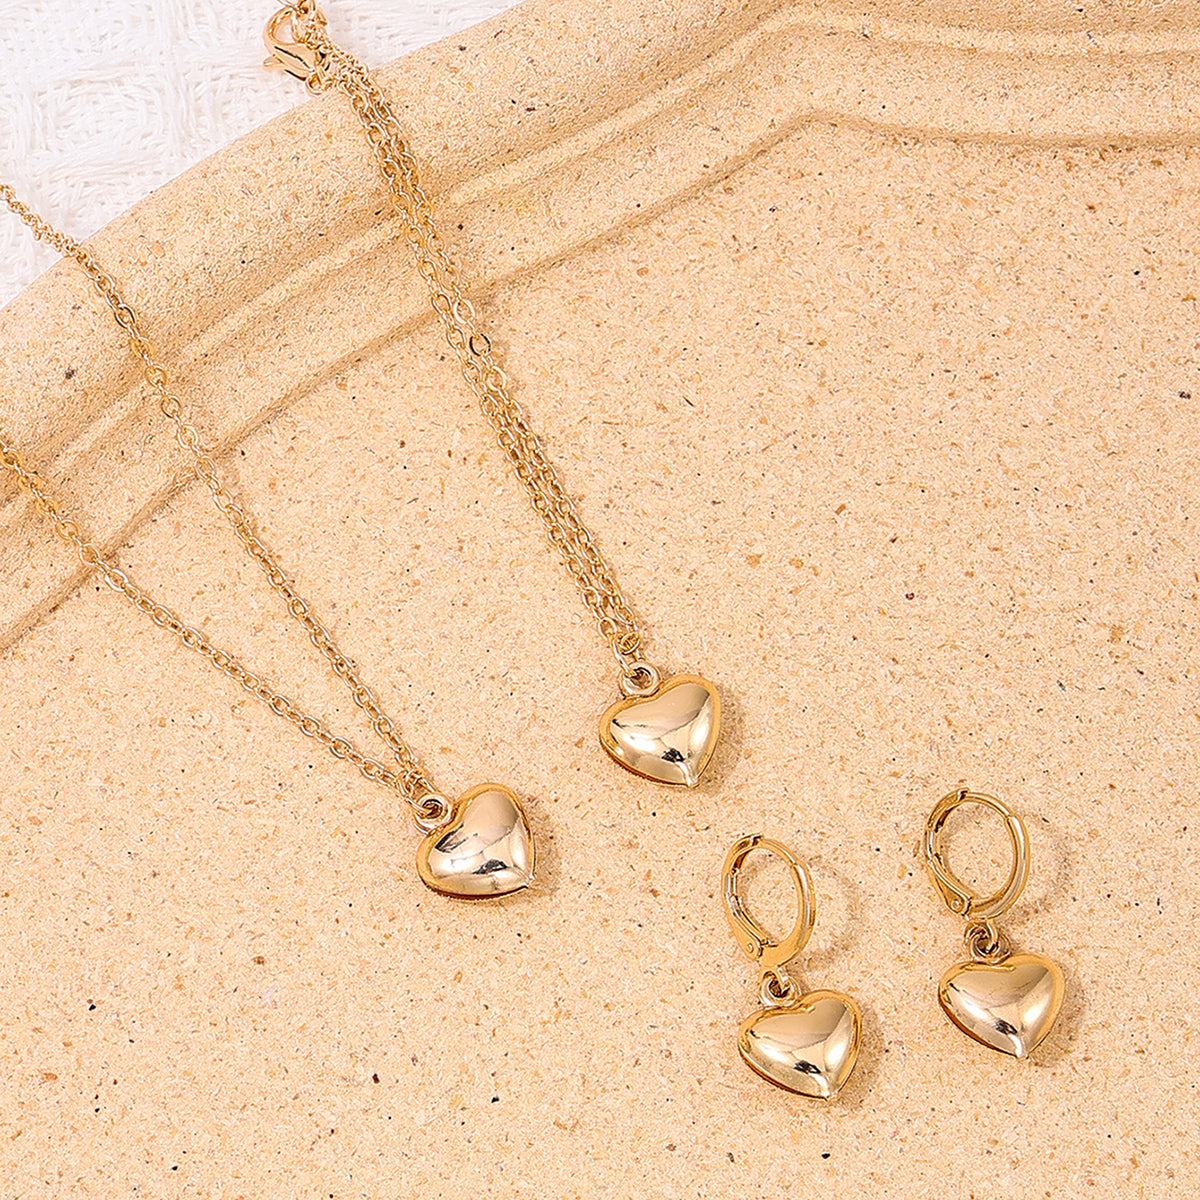 Simple Style Heart Shape Ferroalloy Women's Jewelry Set